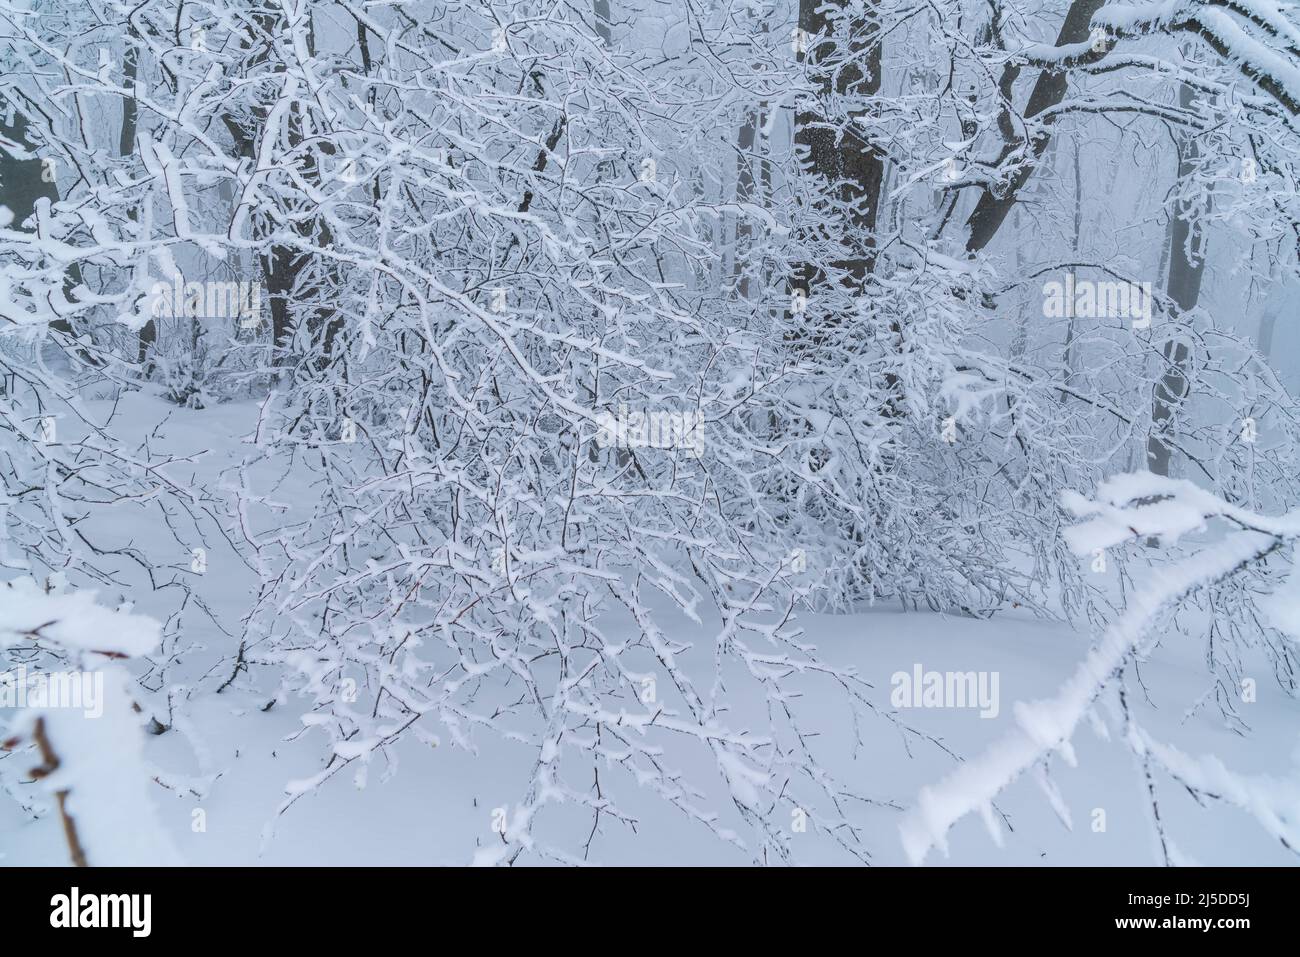 Alemania, hielo blanco congelado y ramas cubiertas de nieve de árboles en el borde del bosque en un día frío de invierno, una hermosa escena de las maravillas Foto de stock